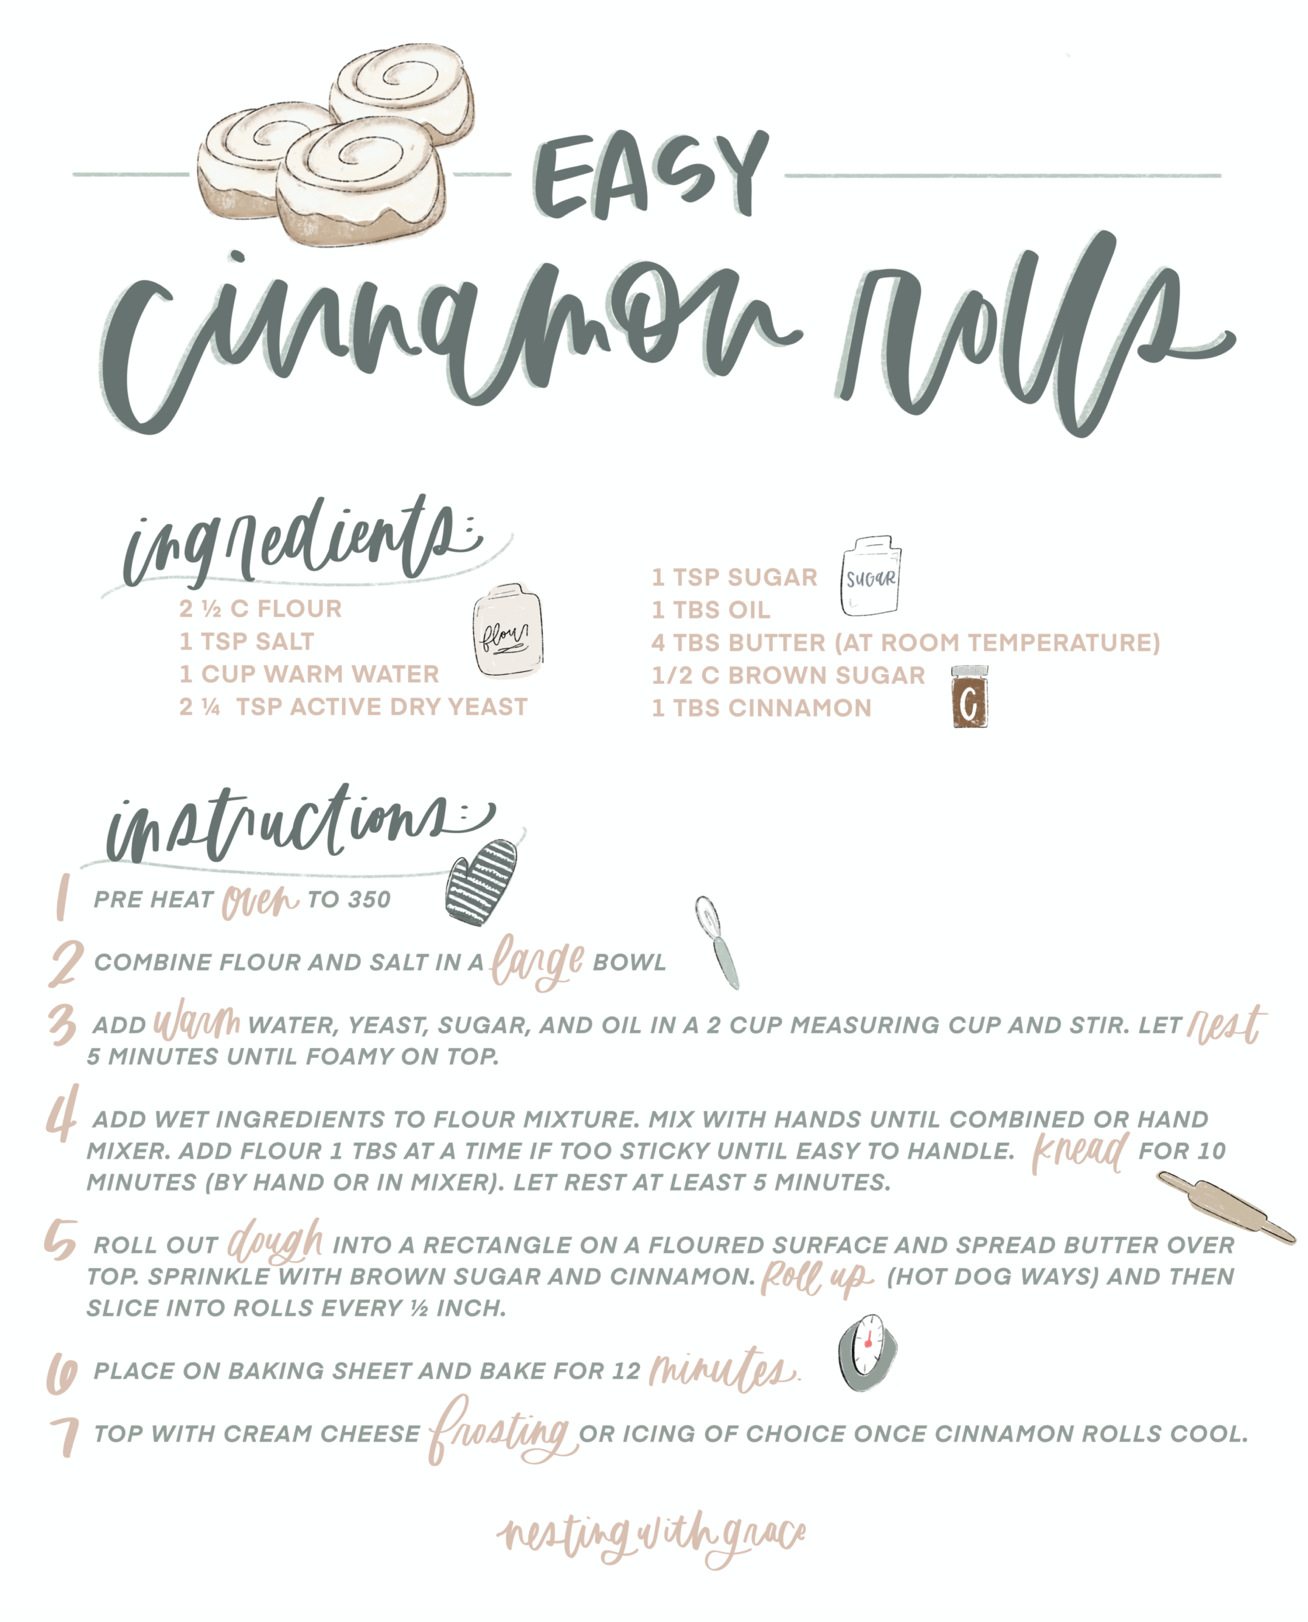 Cinnamon Roll Recipe